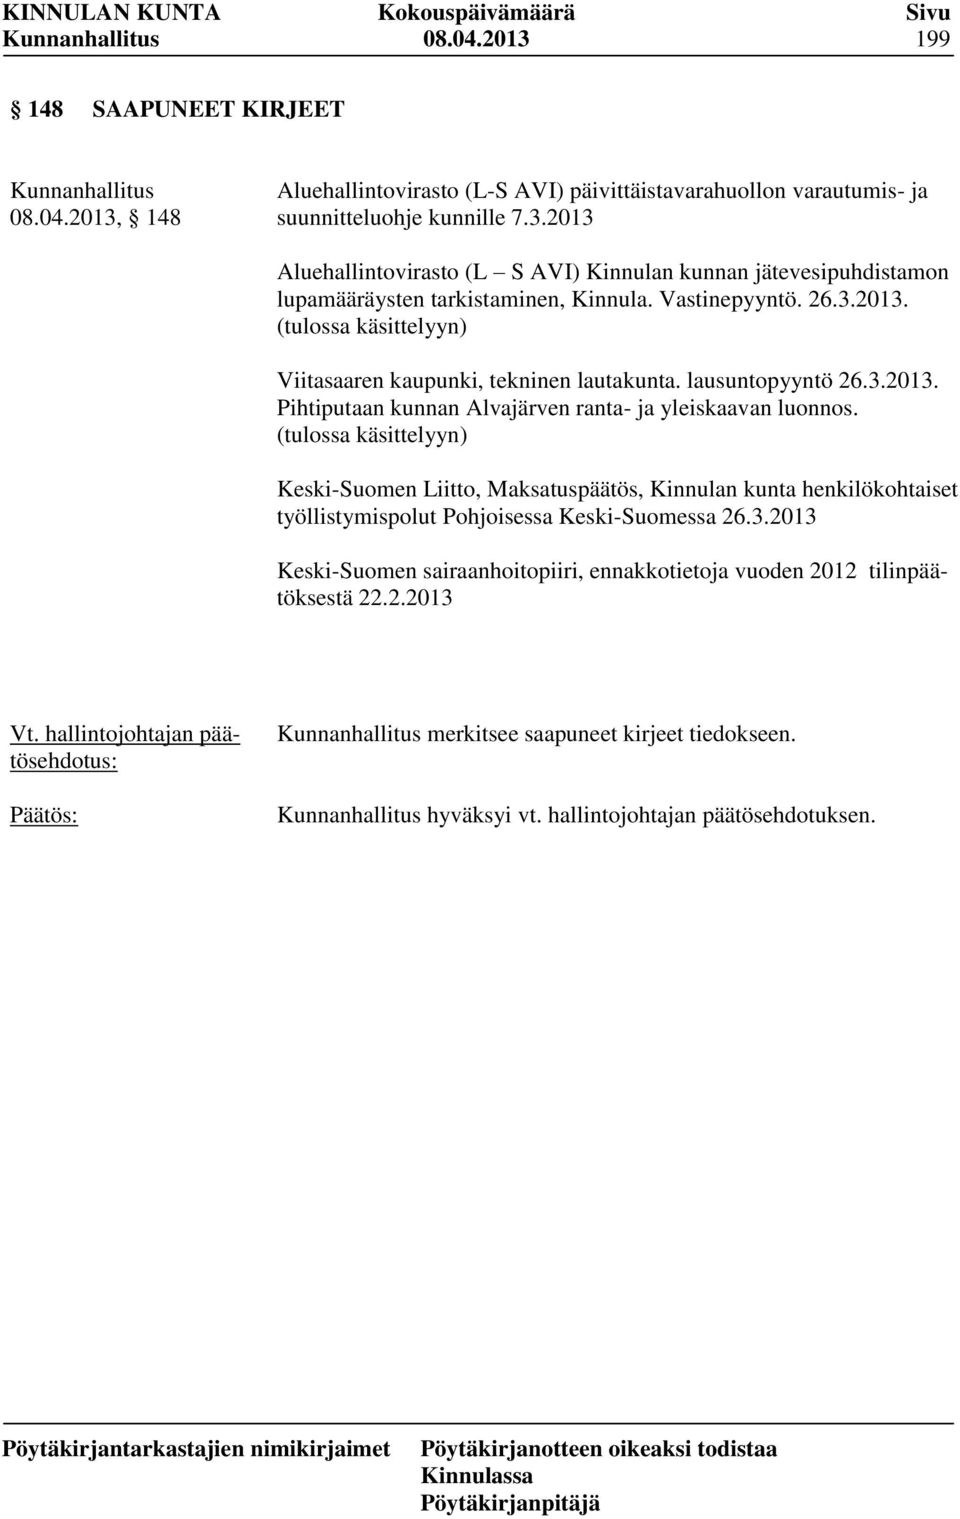 (tulossa käsittelyyn) Keski-Suomen Liitto, Maksatuspäätös, Kinnulan kunta henkilökohtaiset työllistymispolut Pohjoisessa Keski-Suomessa 26.3.